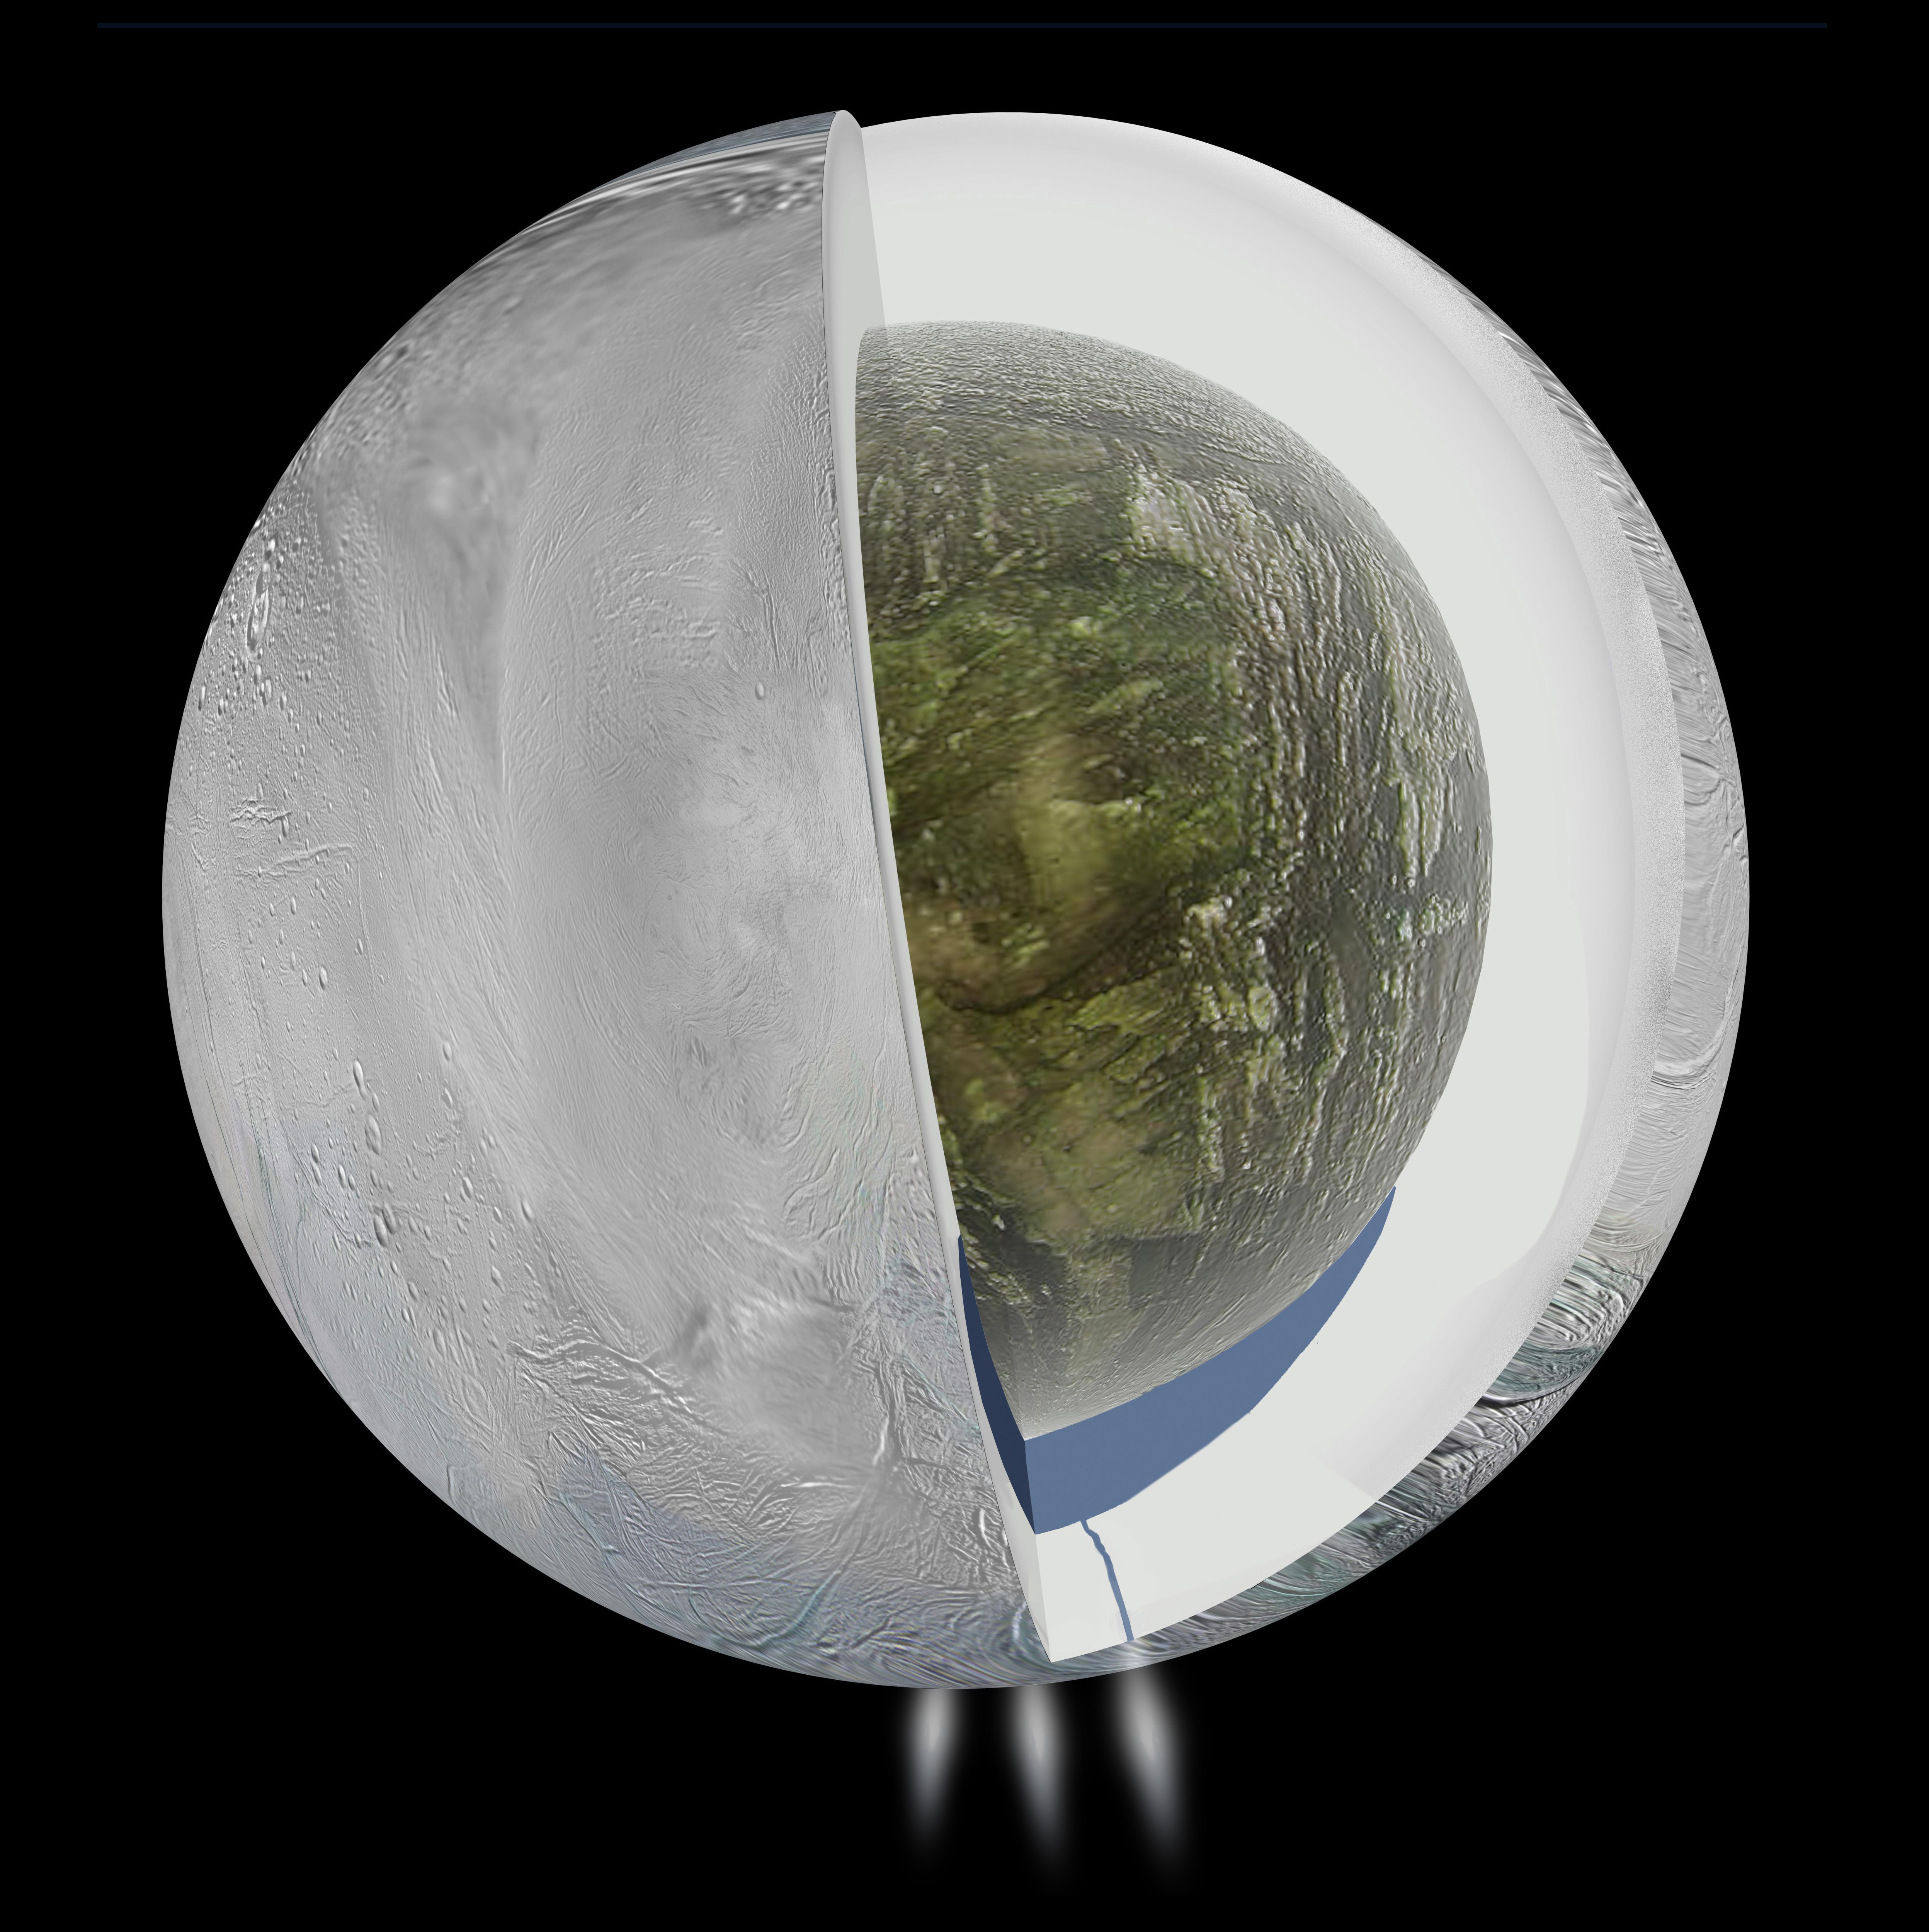 Impresión artística del interior de Encélado. Fuente: NASA/JPL-Caltech.